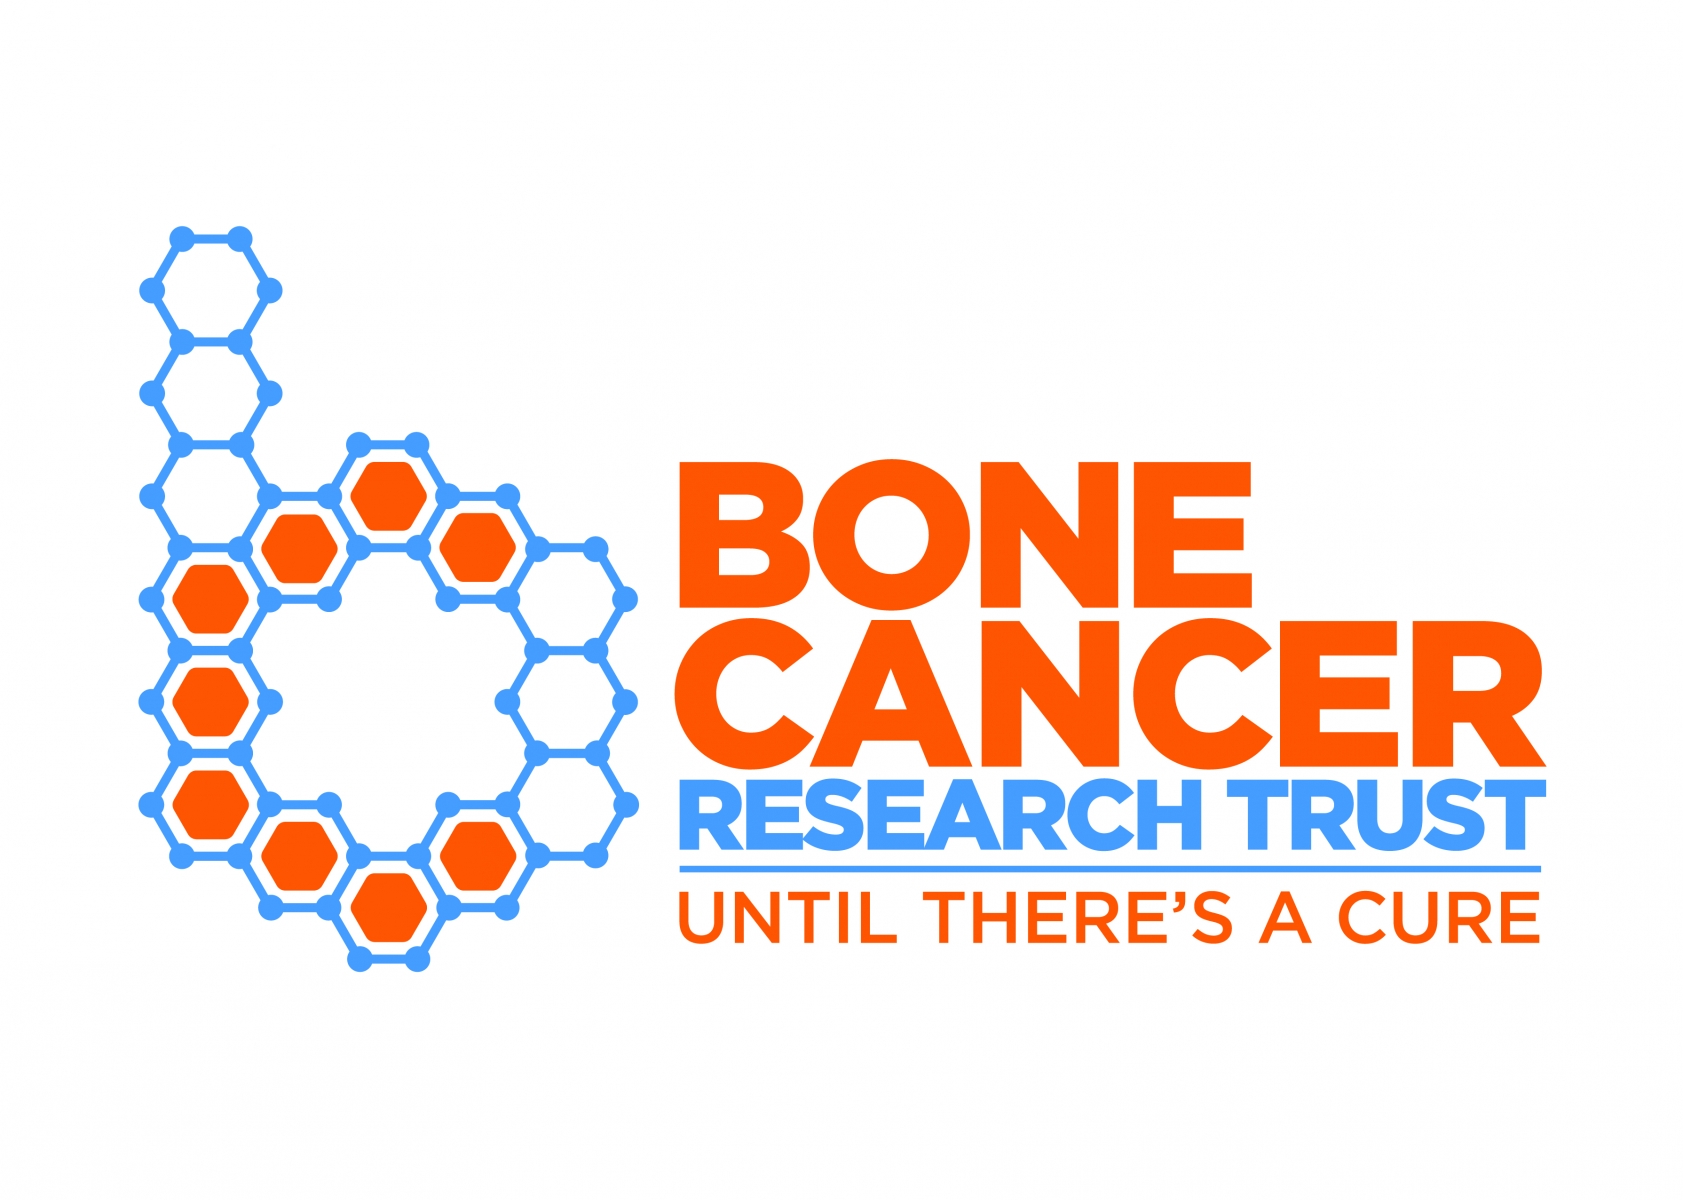 Bone Cancer Research Trust eCards